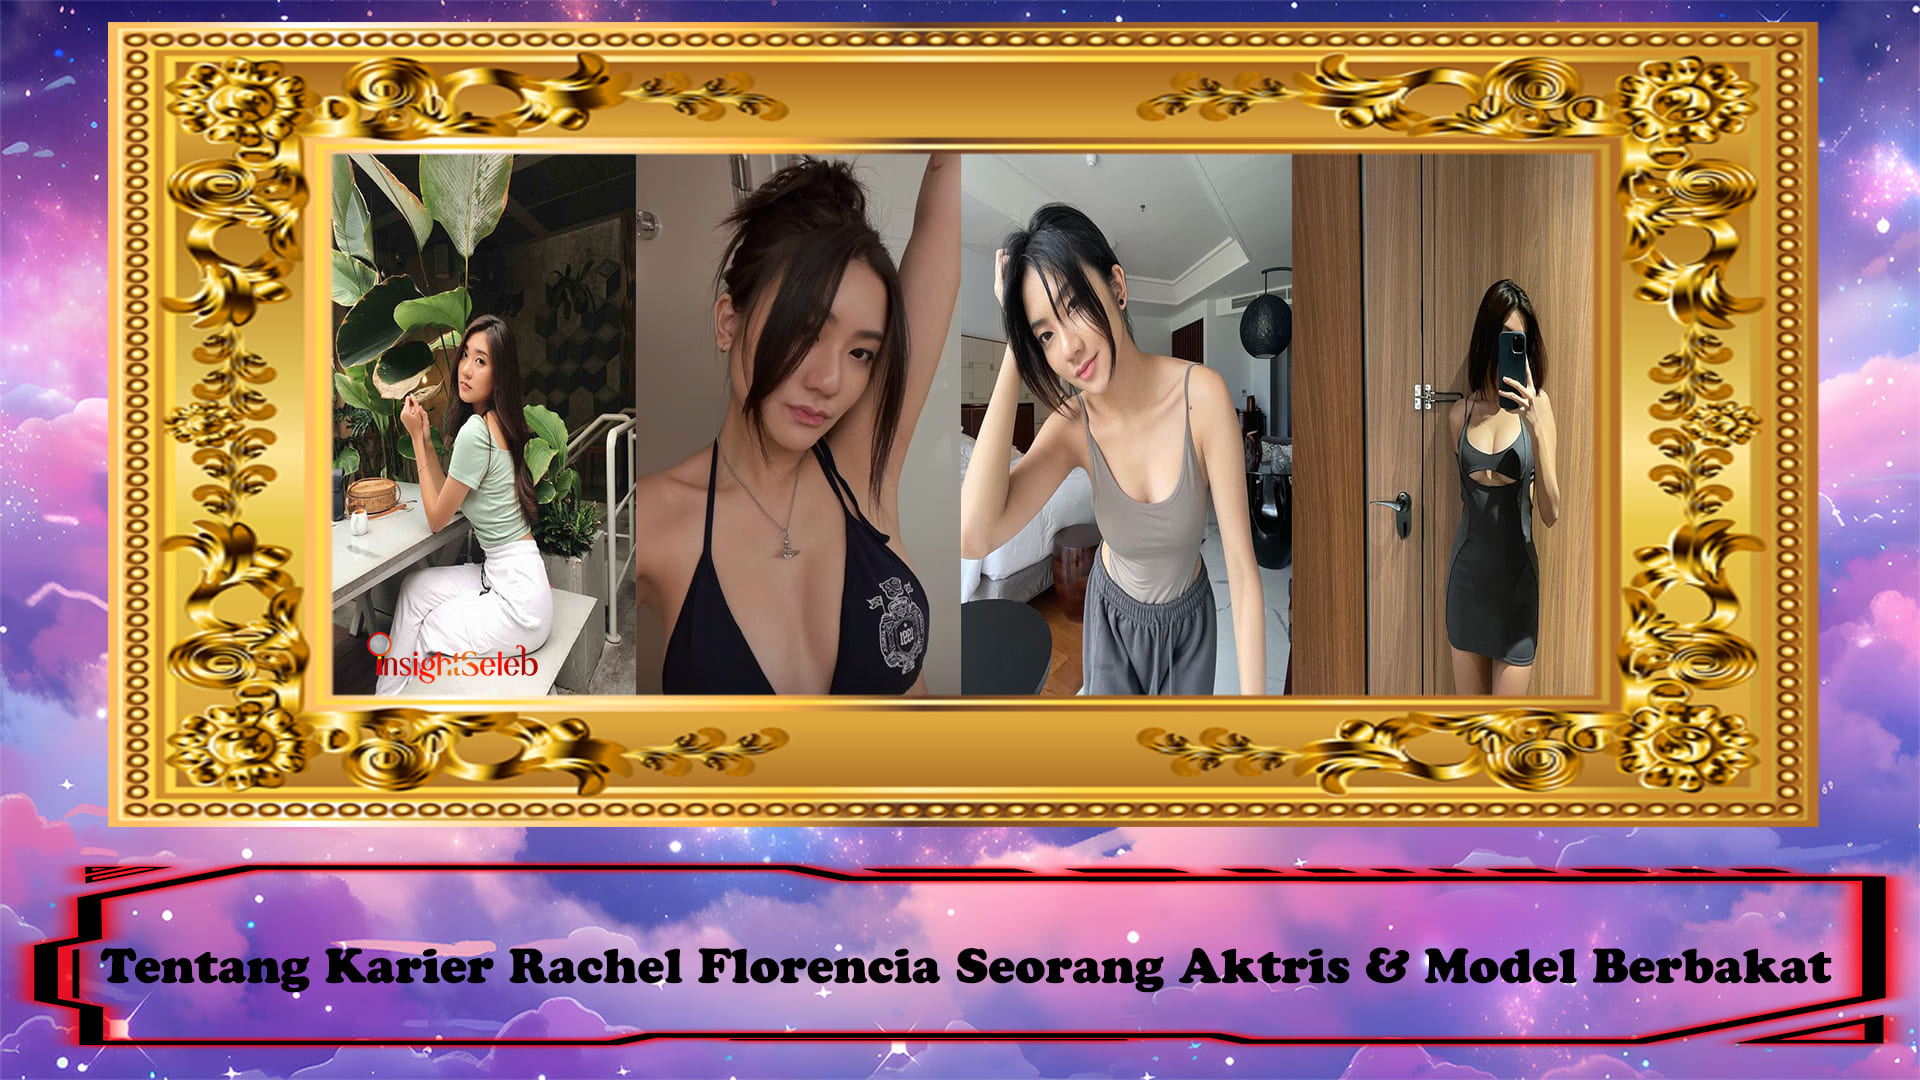 Tentang Karier Rachel Florencia Seorang Aktris & Model Berbakat